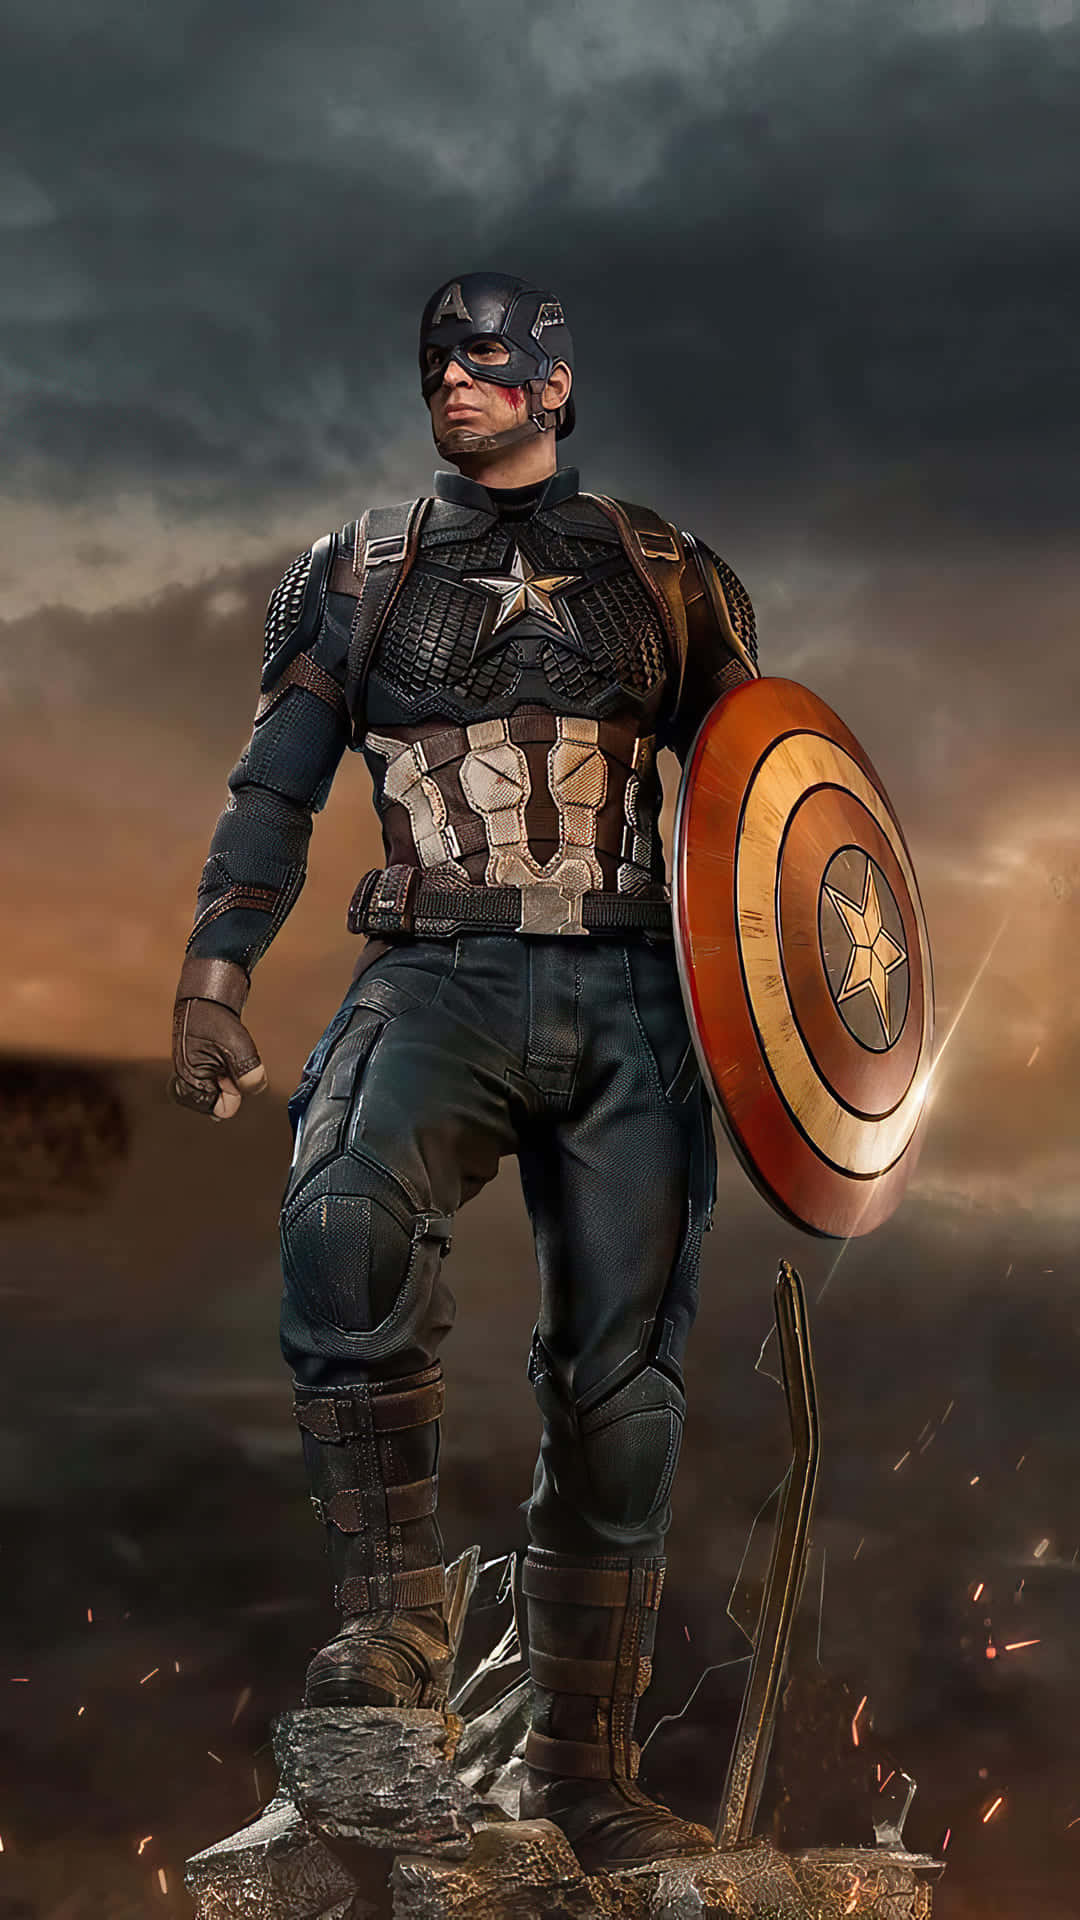 Captain America bruger sin Super Soldier styrke til at kæmpe imod onde kræfter.